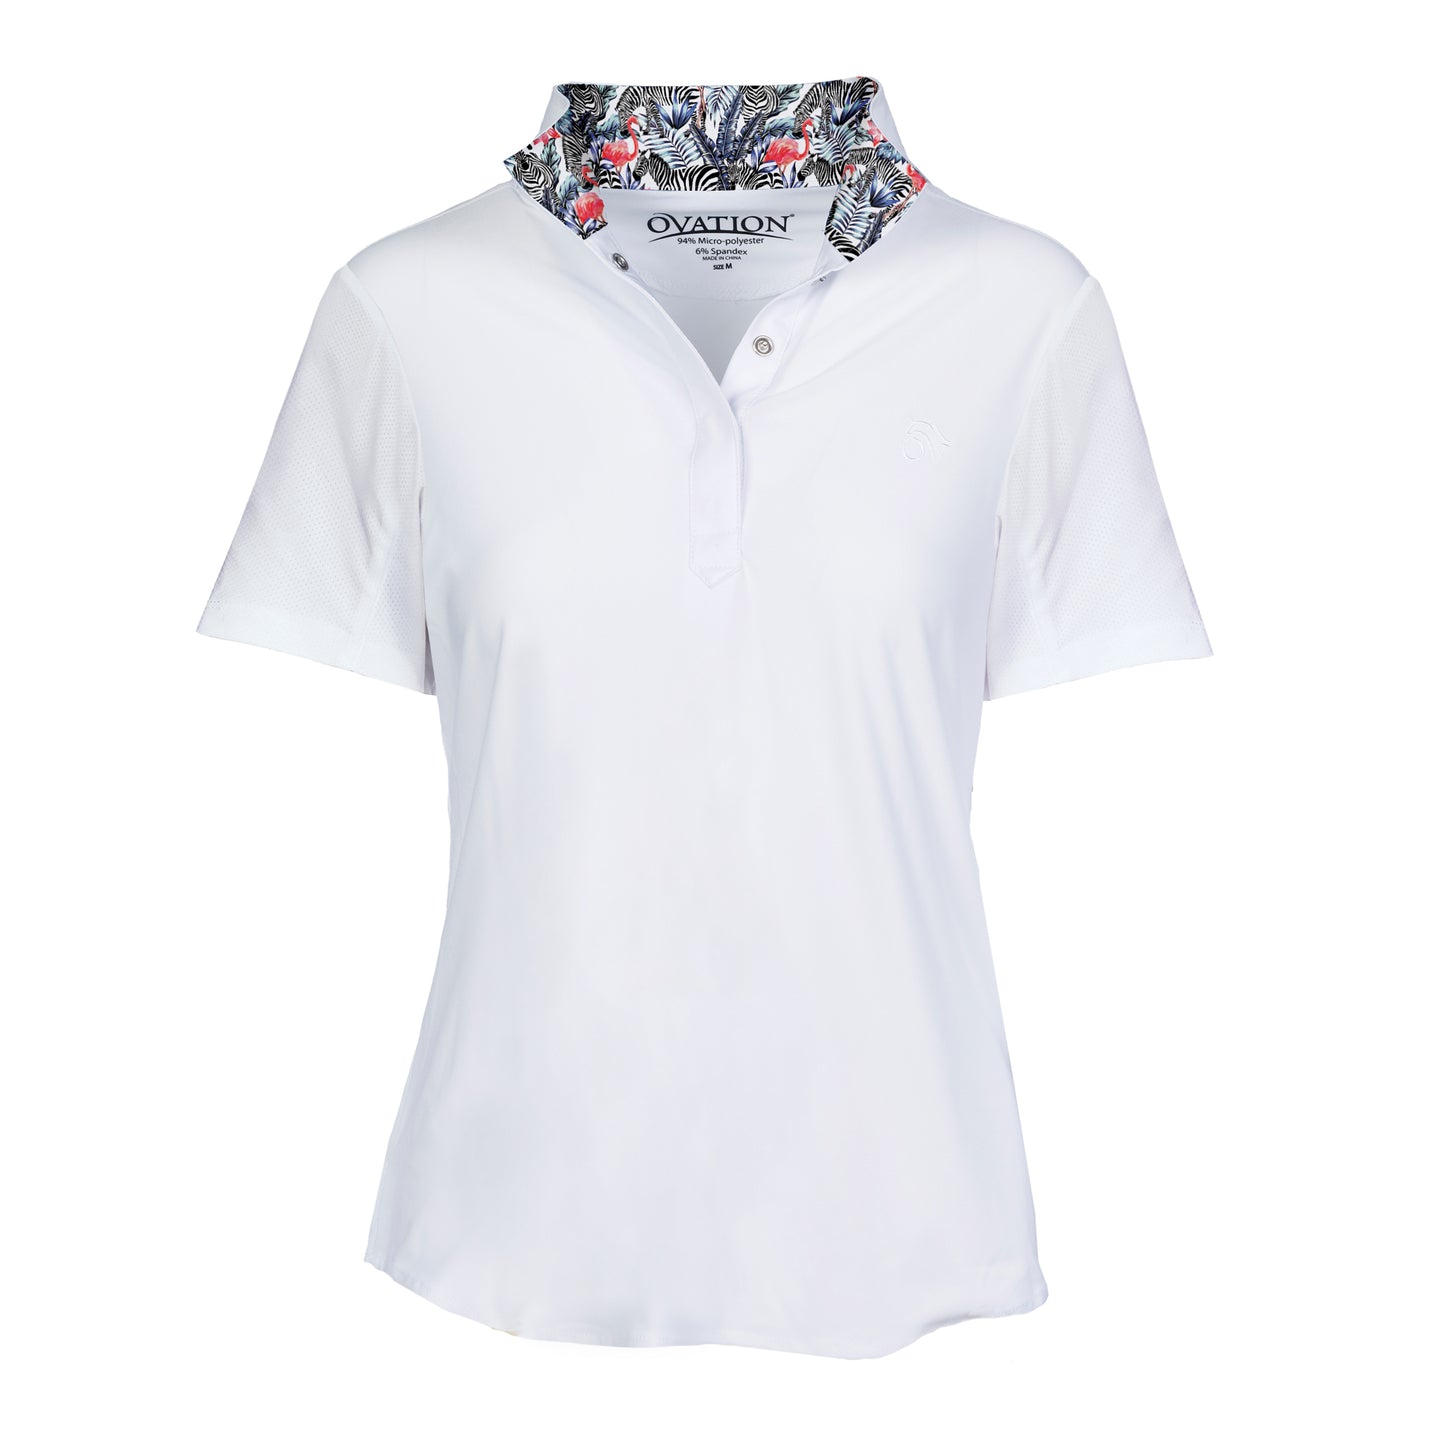 Ovation® Jorden Ladies' Tech Short Sleeve Show Shirt, Zebra